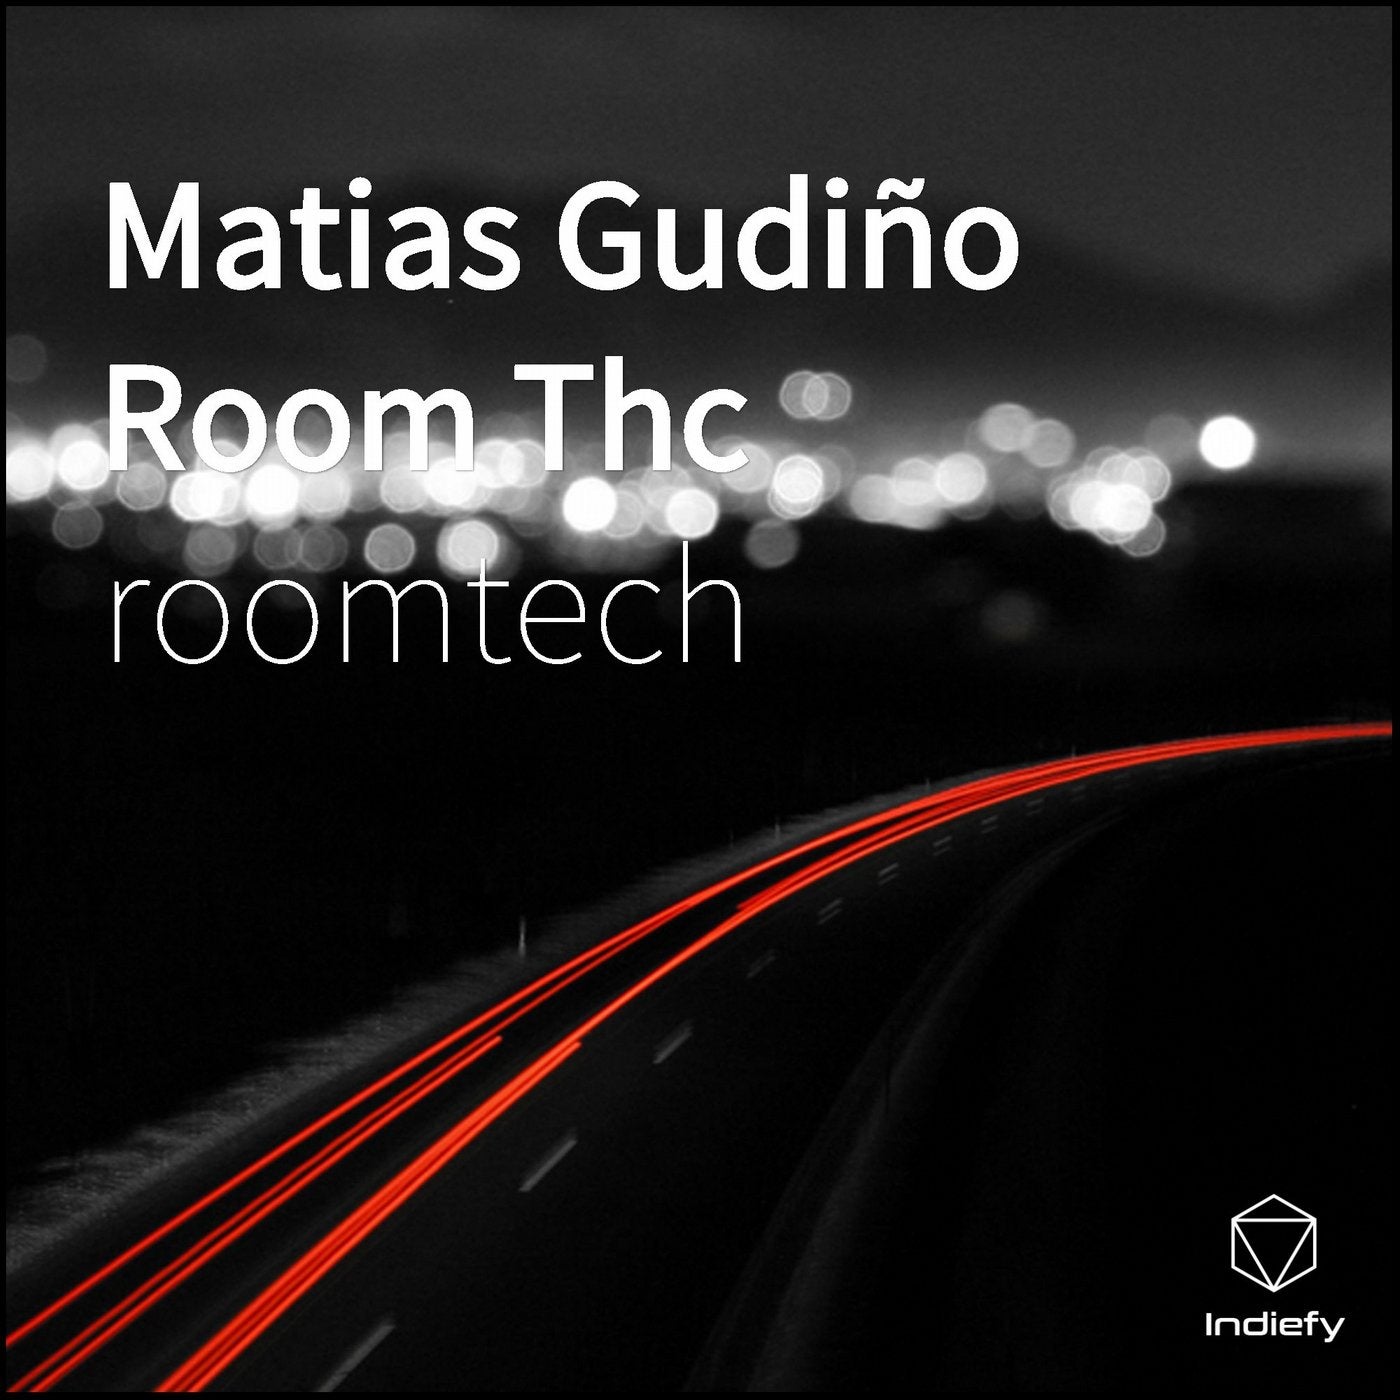 Matias Gudino Room Thc